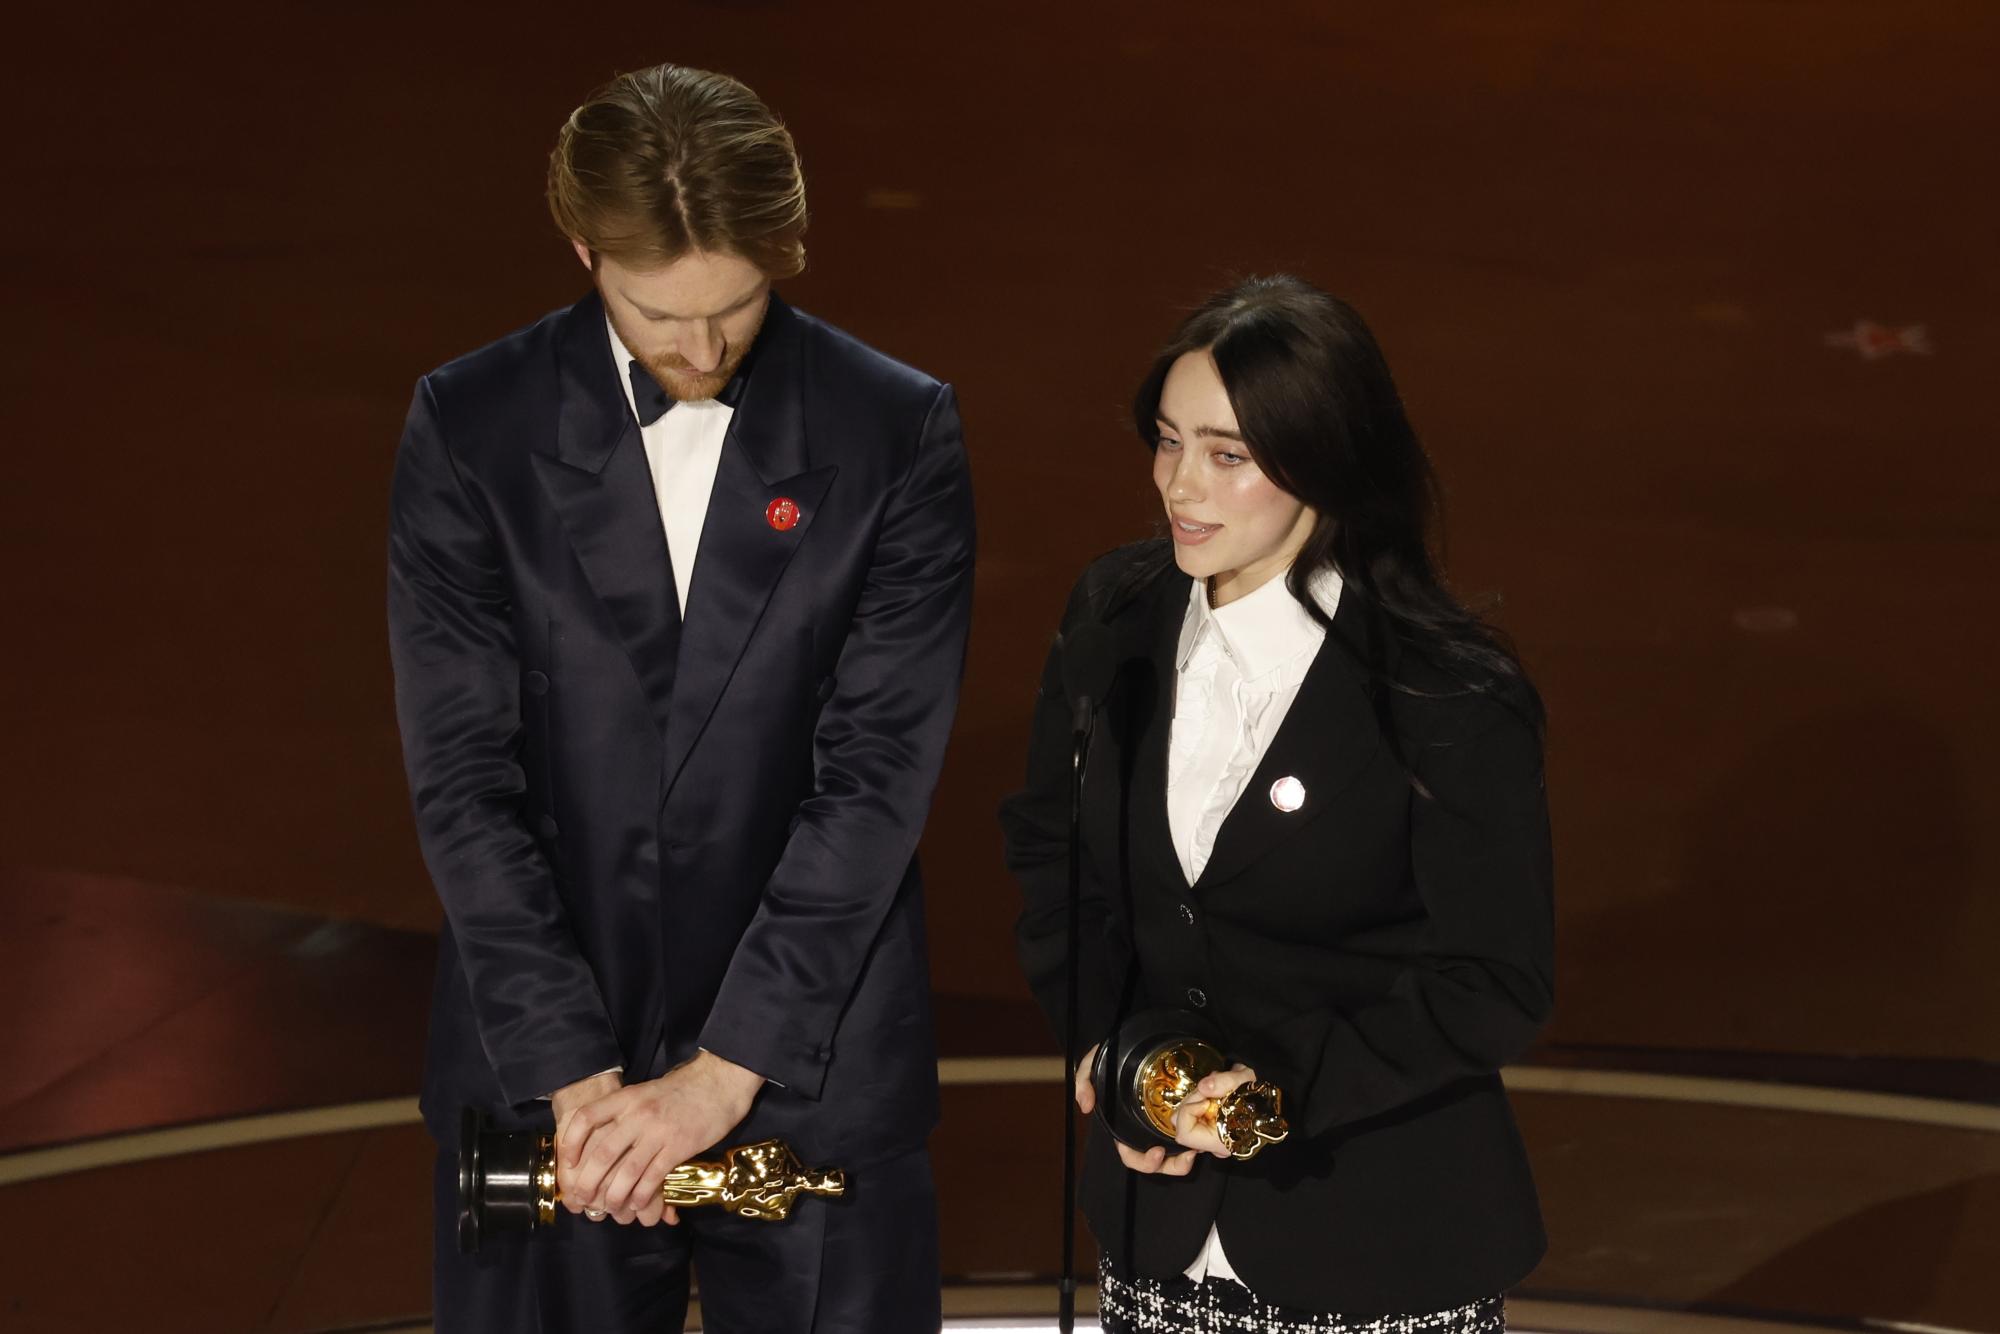 Били Айлиш и брат й Финиъс О'Конъл получиха статуетките си „Оскар“ със значки в подкрепа на незабавната деескалация на конфликта в Газа